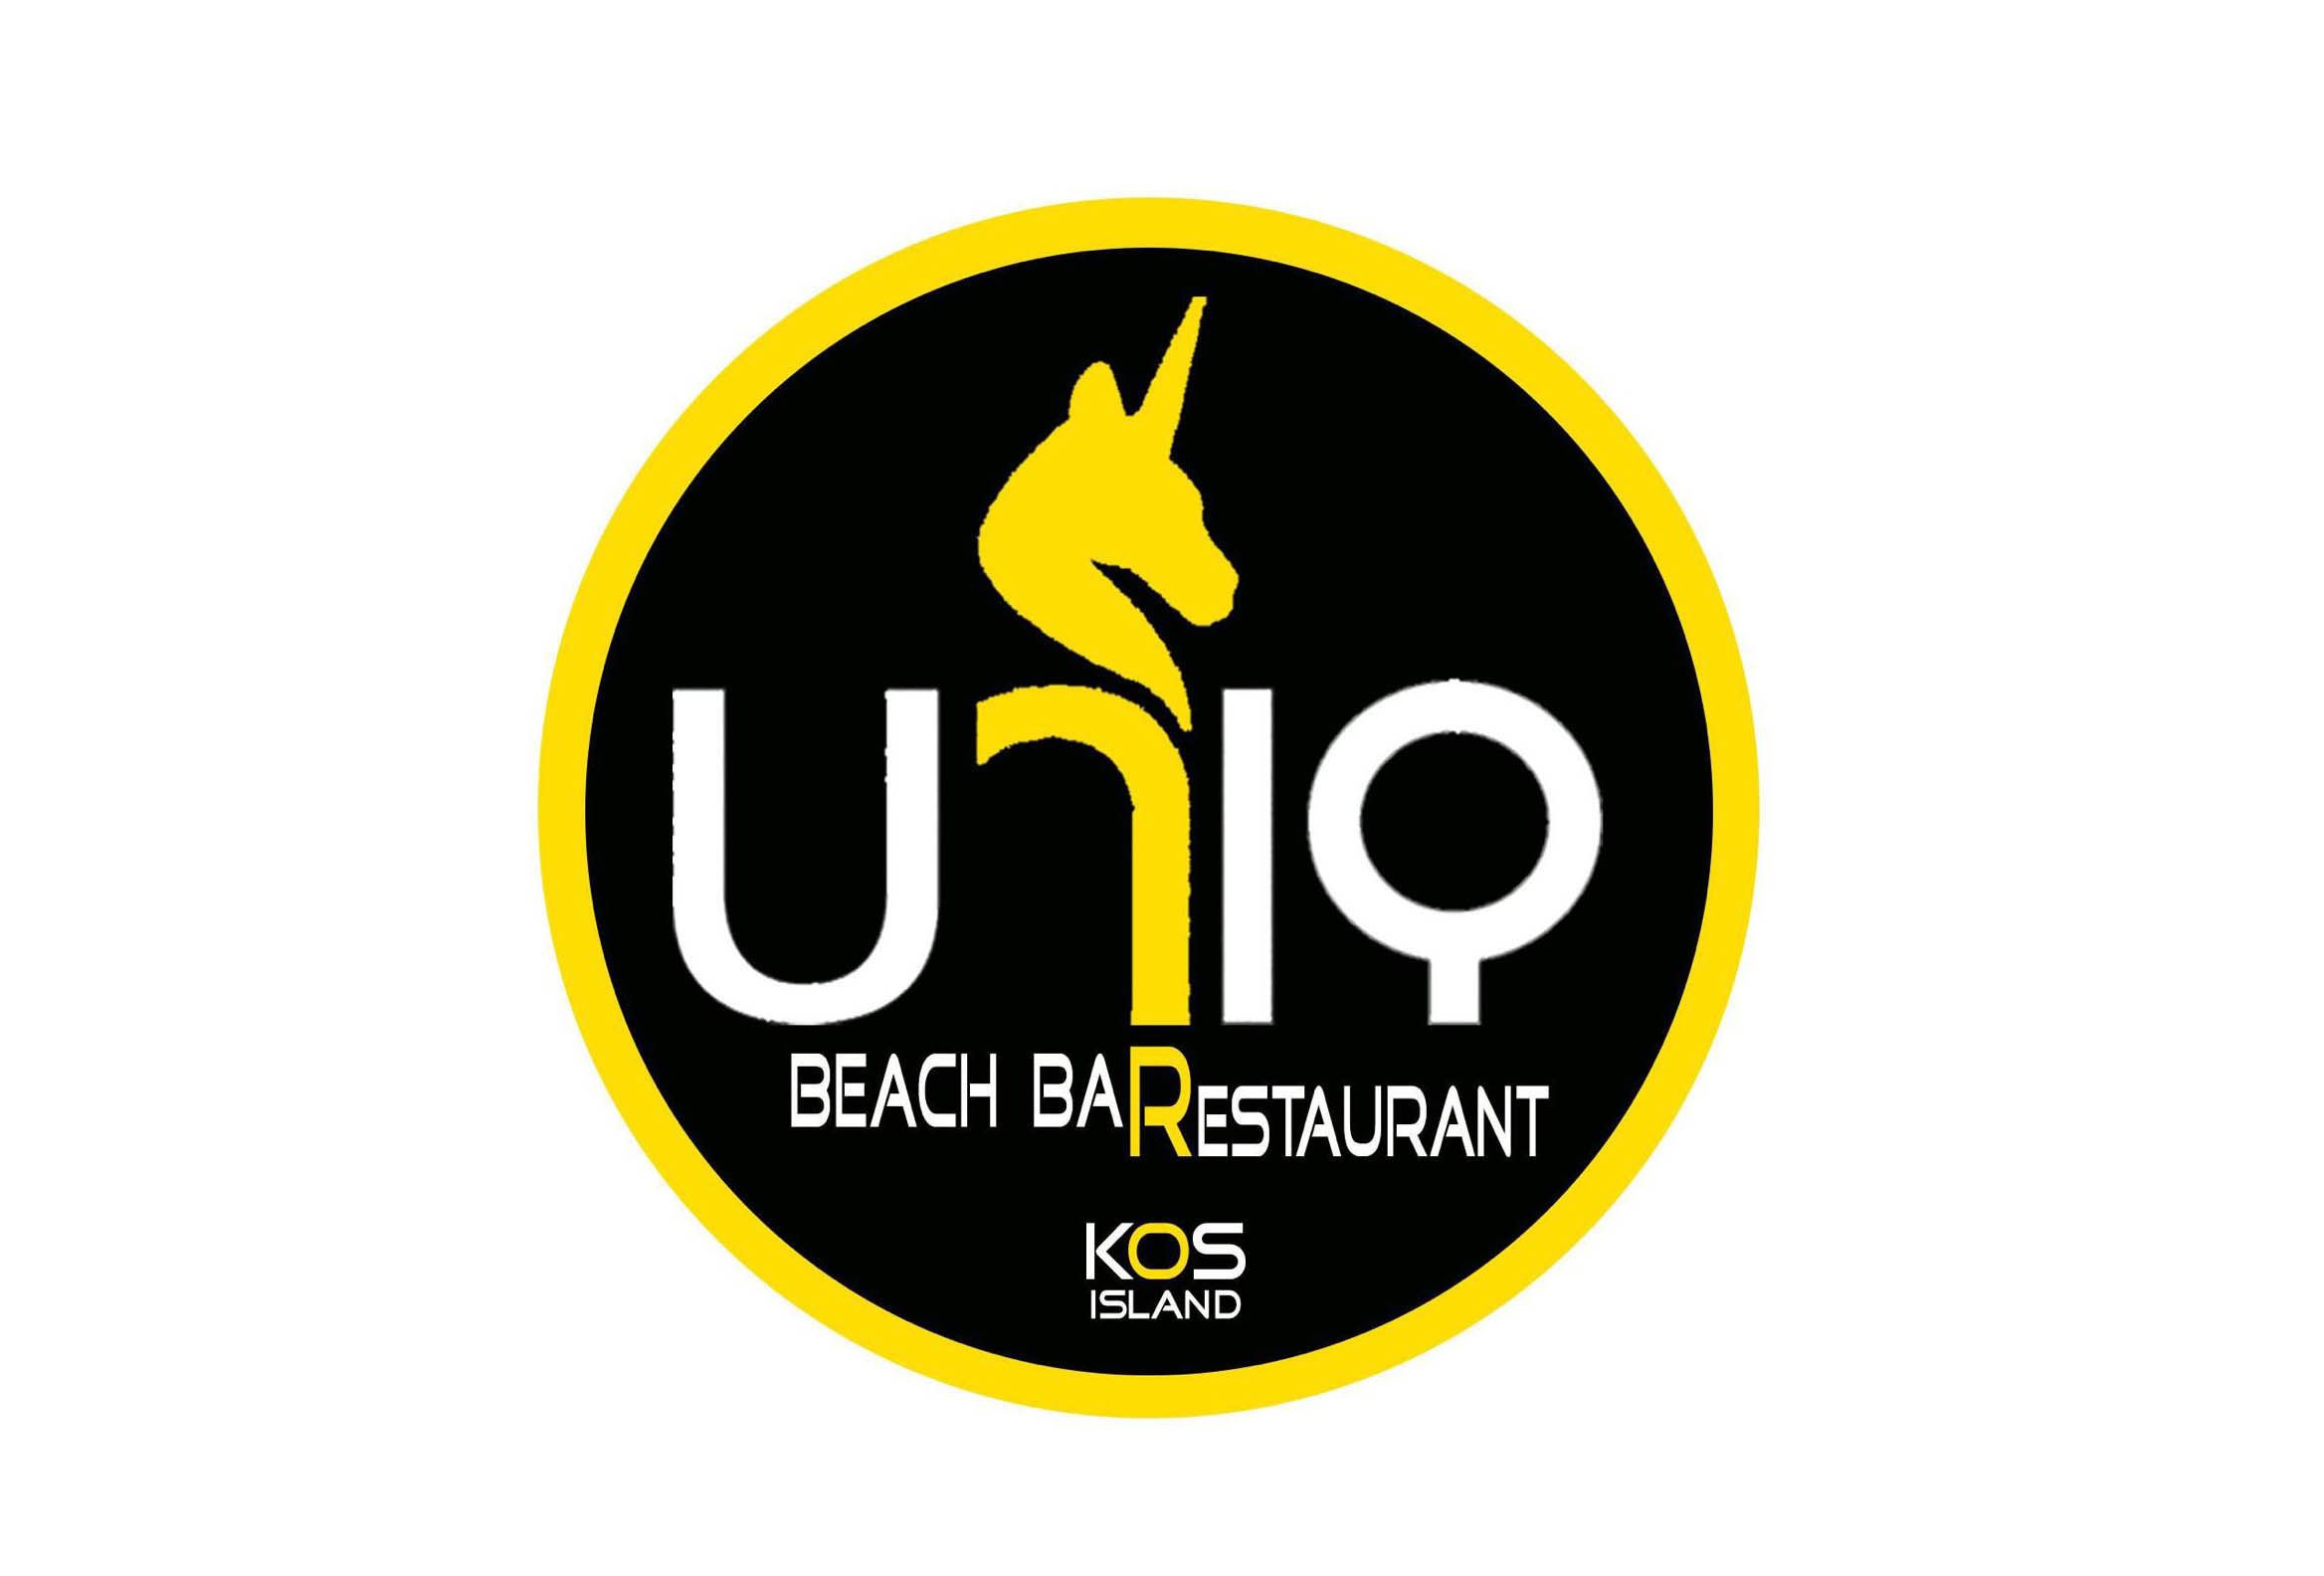 Από το “Uniq beach bar restaurant” στην Κω ζητείται προσωπικό 